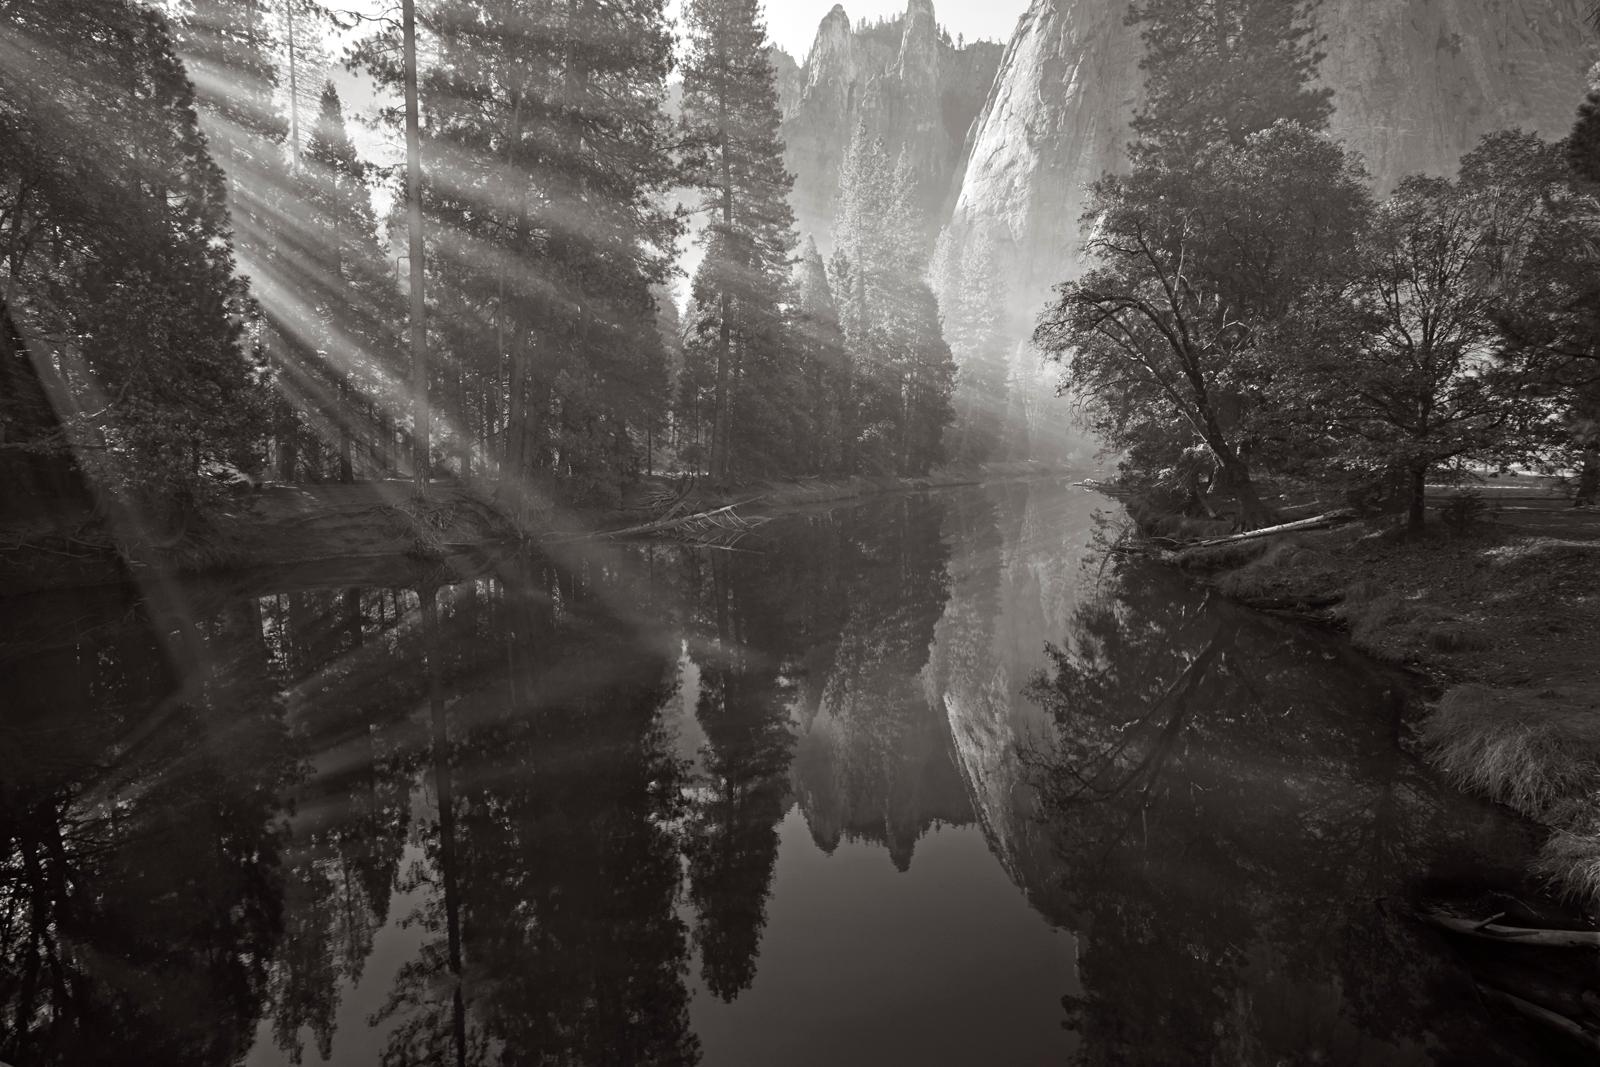 Black and White Photograph Drew Doggett - Streaming d'une lumière d'un autre monde dans le parc national de Yosemite, noir et blanc, classique